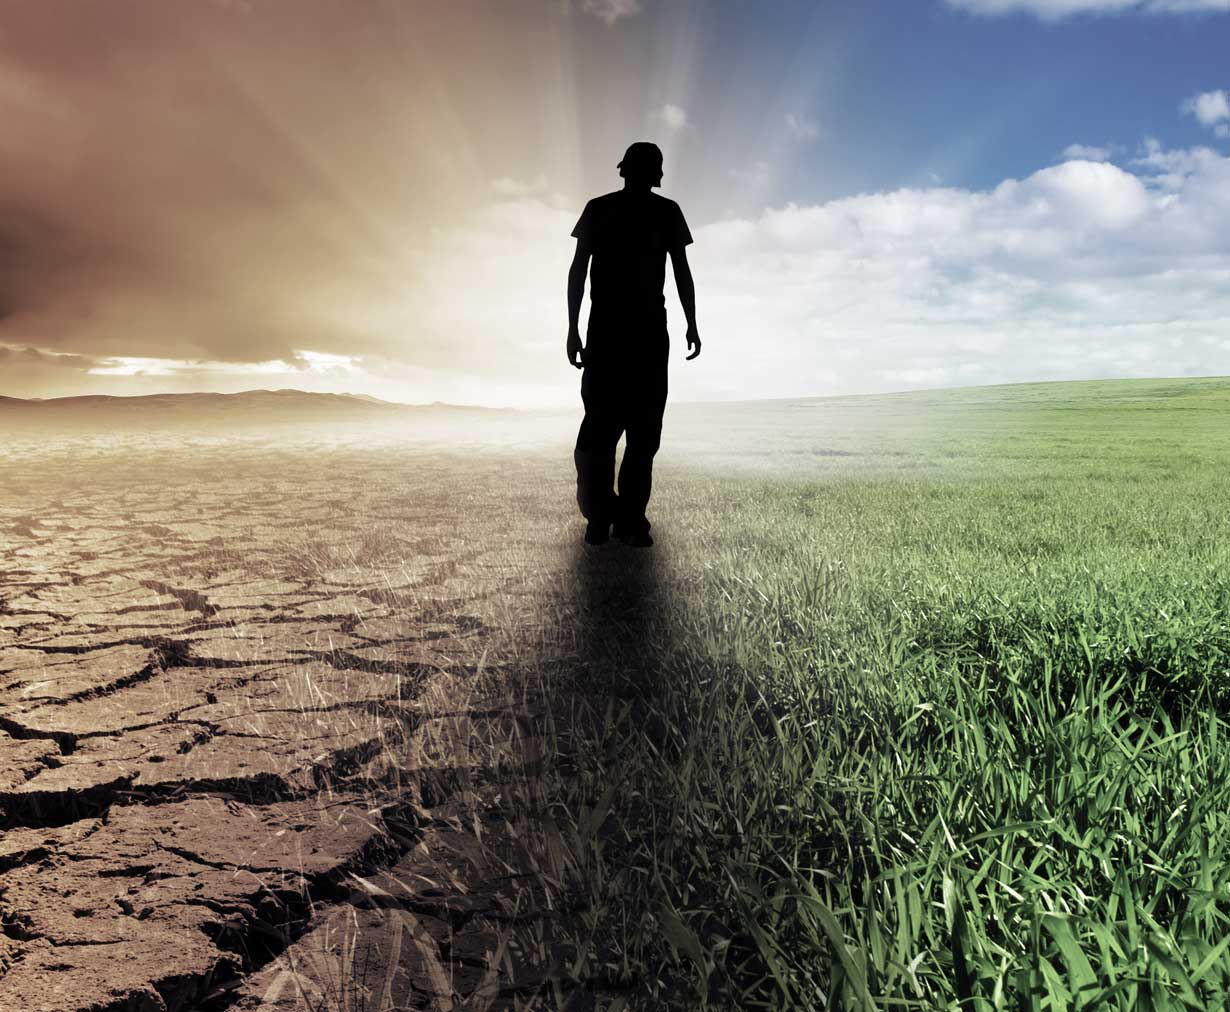 Mies kävelee pellolla, josta osa on kuivaa